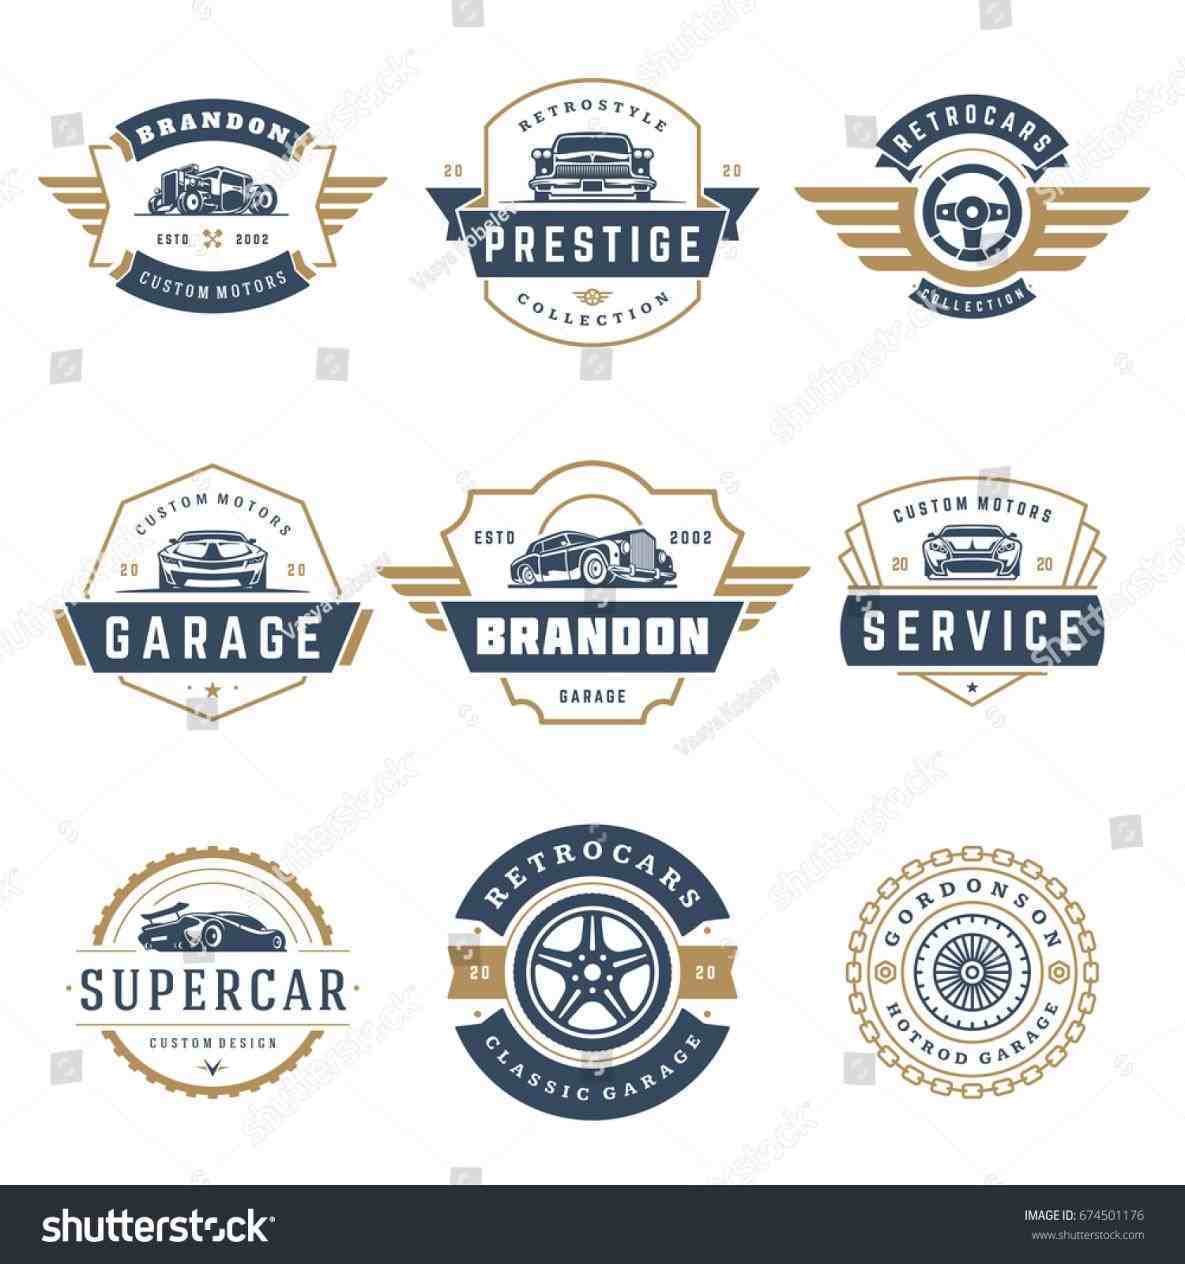 Vintage Auto Shop Logo - Auto parts eshop retro u bikivikicomrhbikivikicom auto vintage car ...